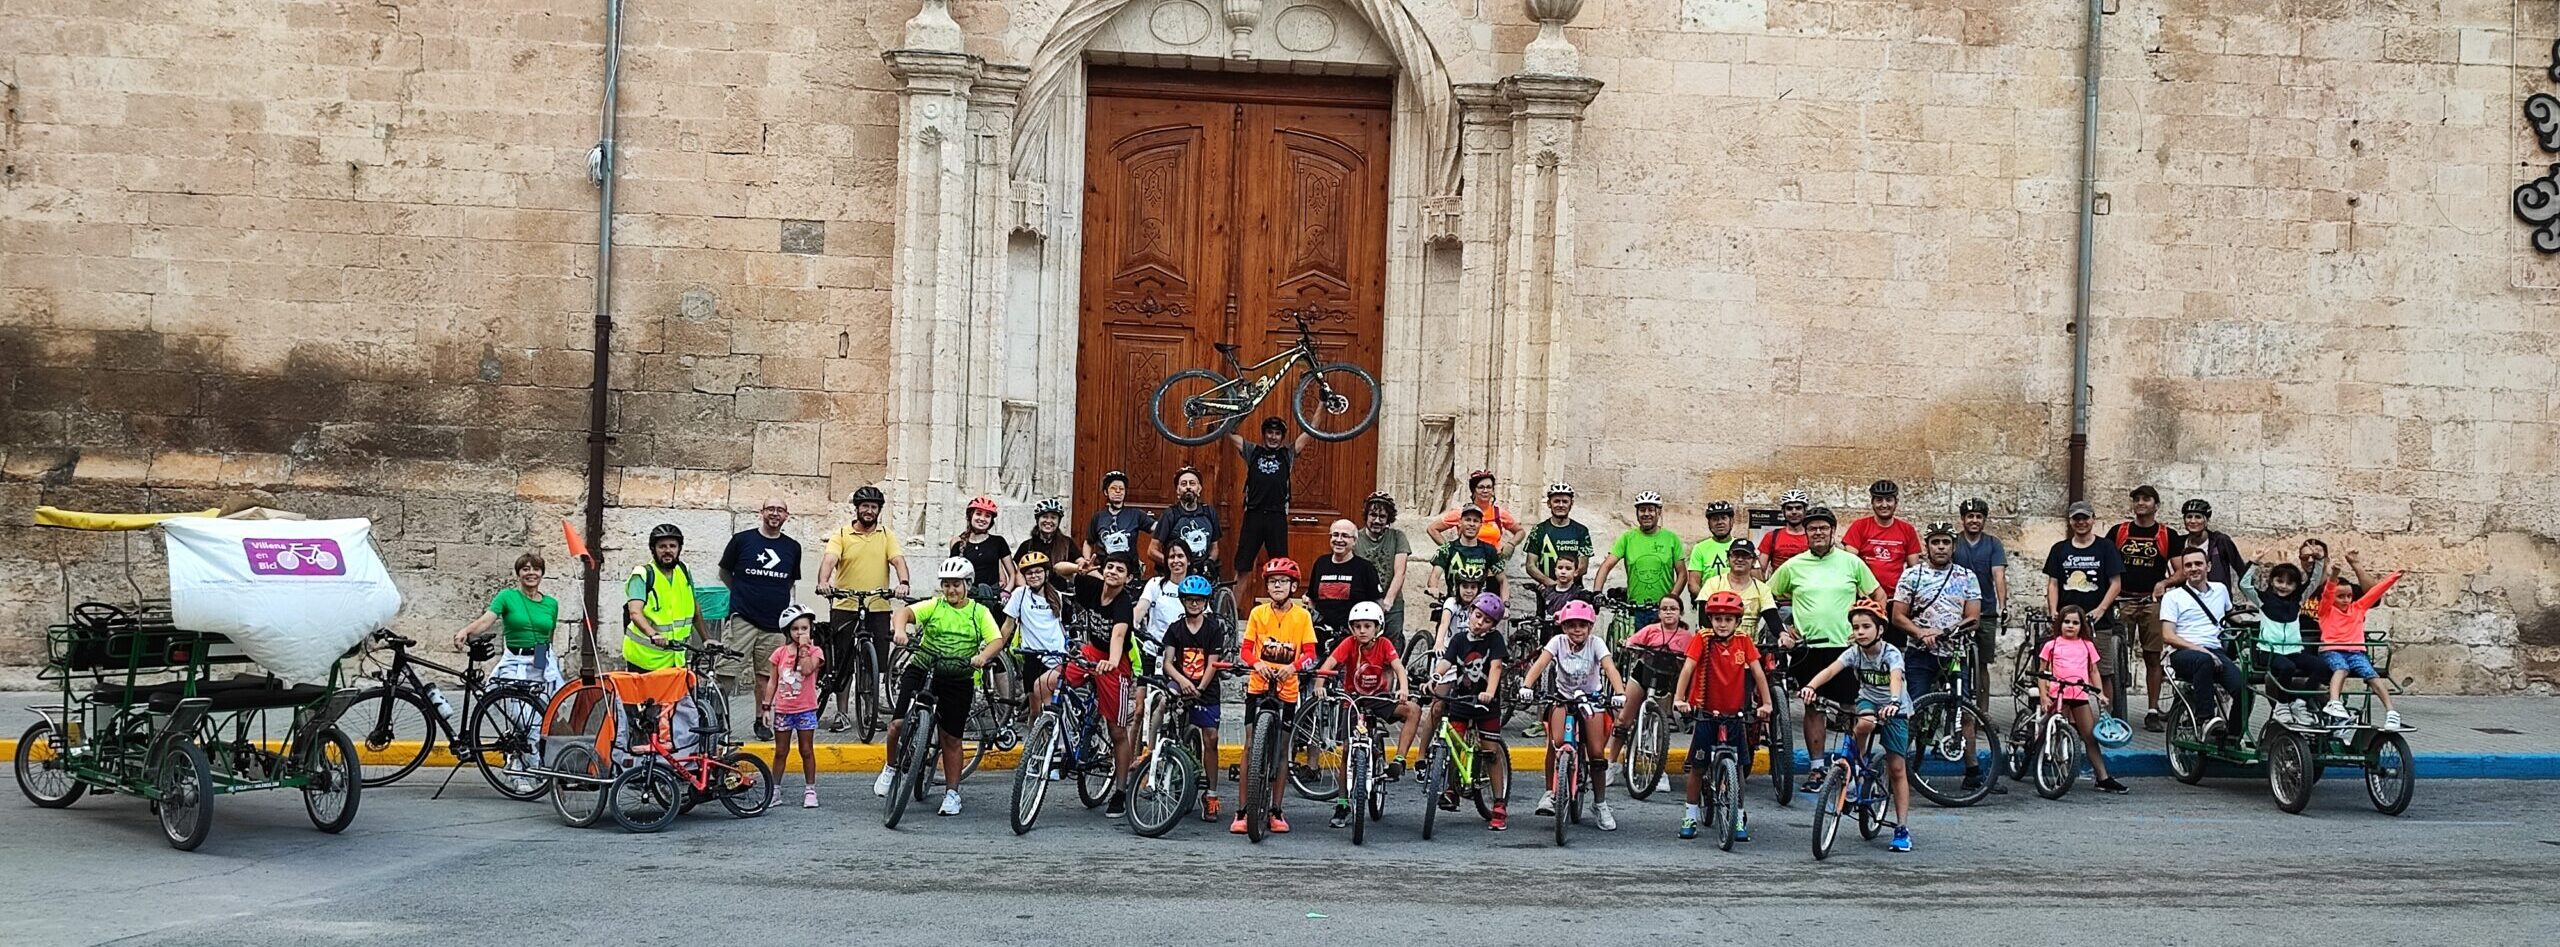 Villena en Bici pide la puesta en marcha de ciclocalles que conecten los servicios principales de la ciudad